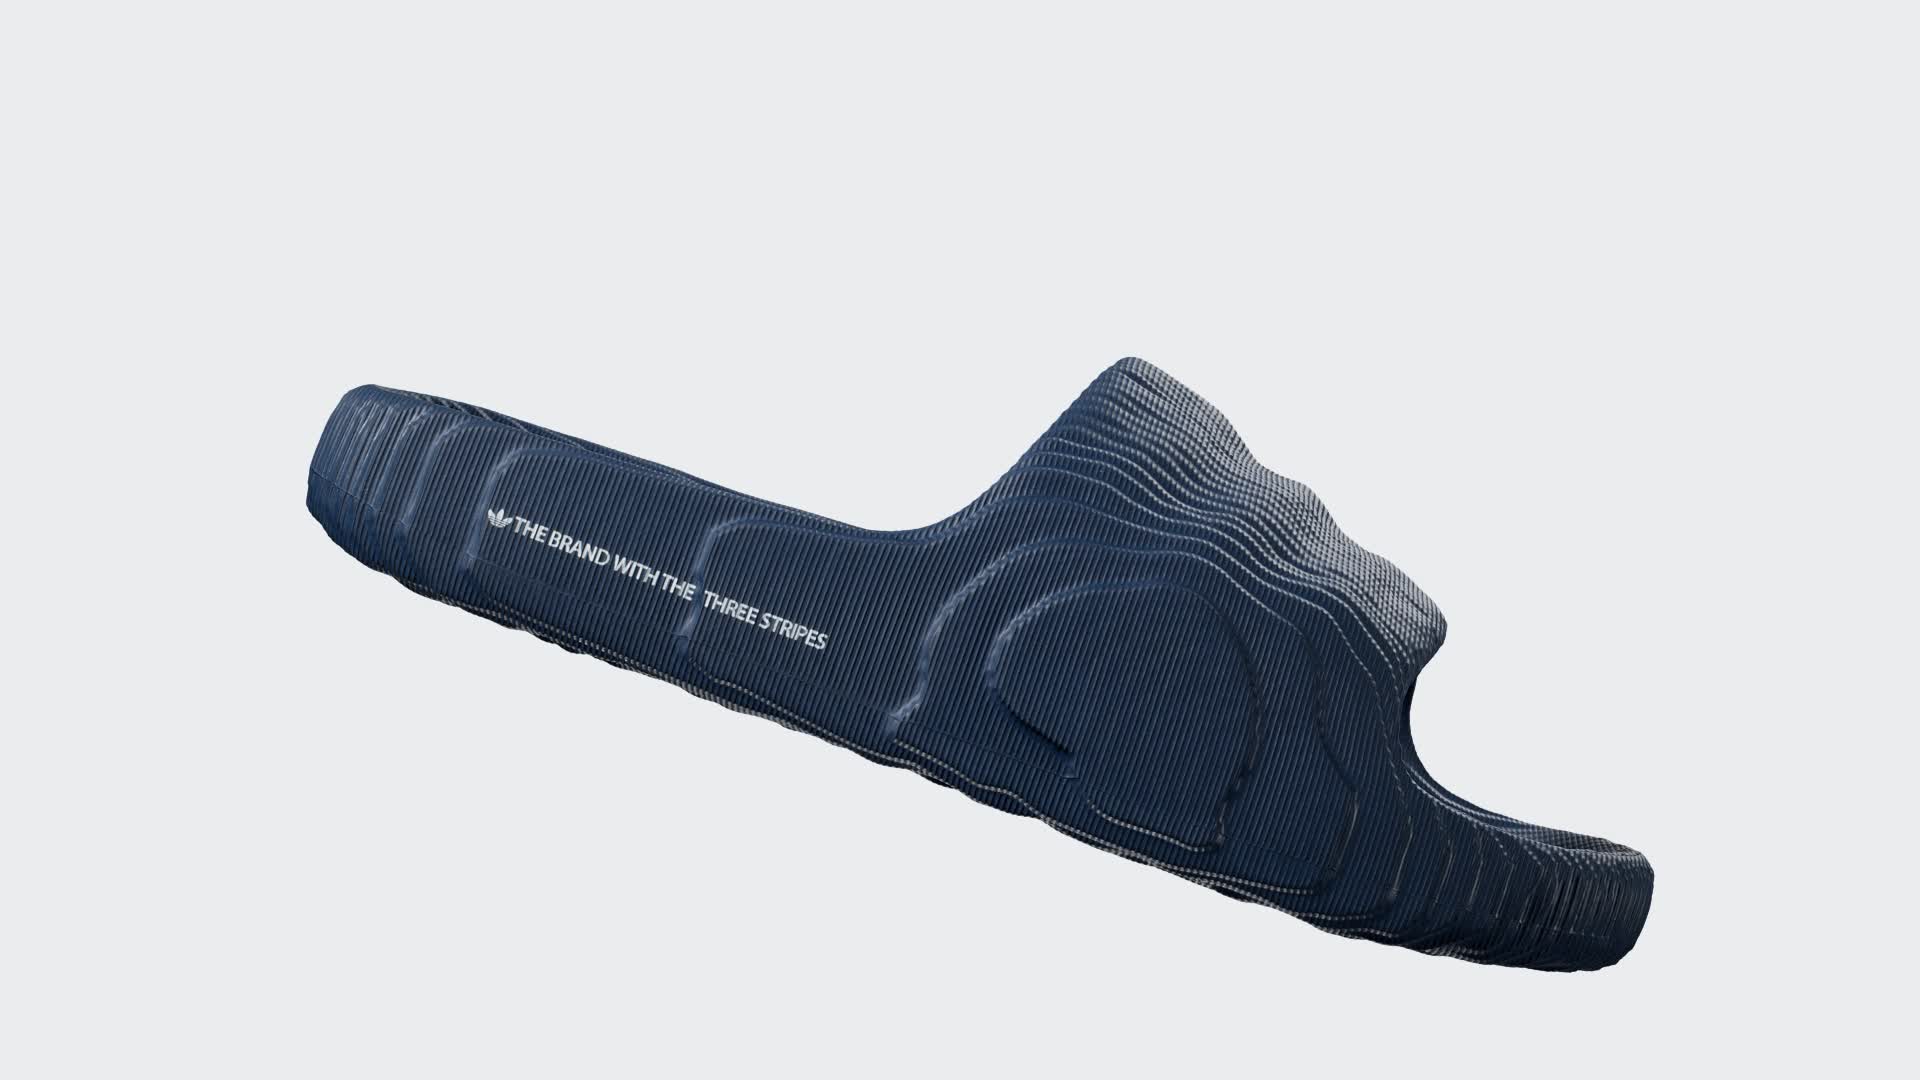 adidas Adilette 22 Slides - Blue | Men\'s Swim | adidas US